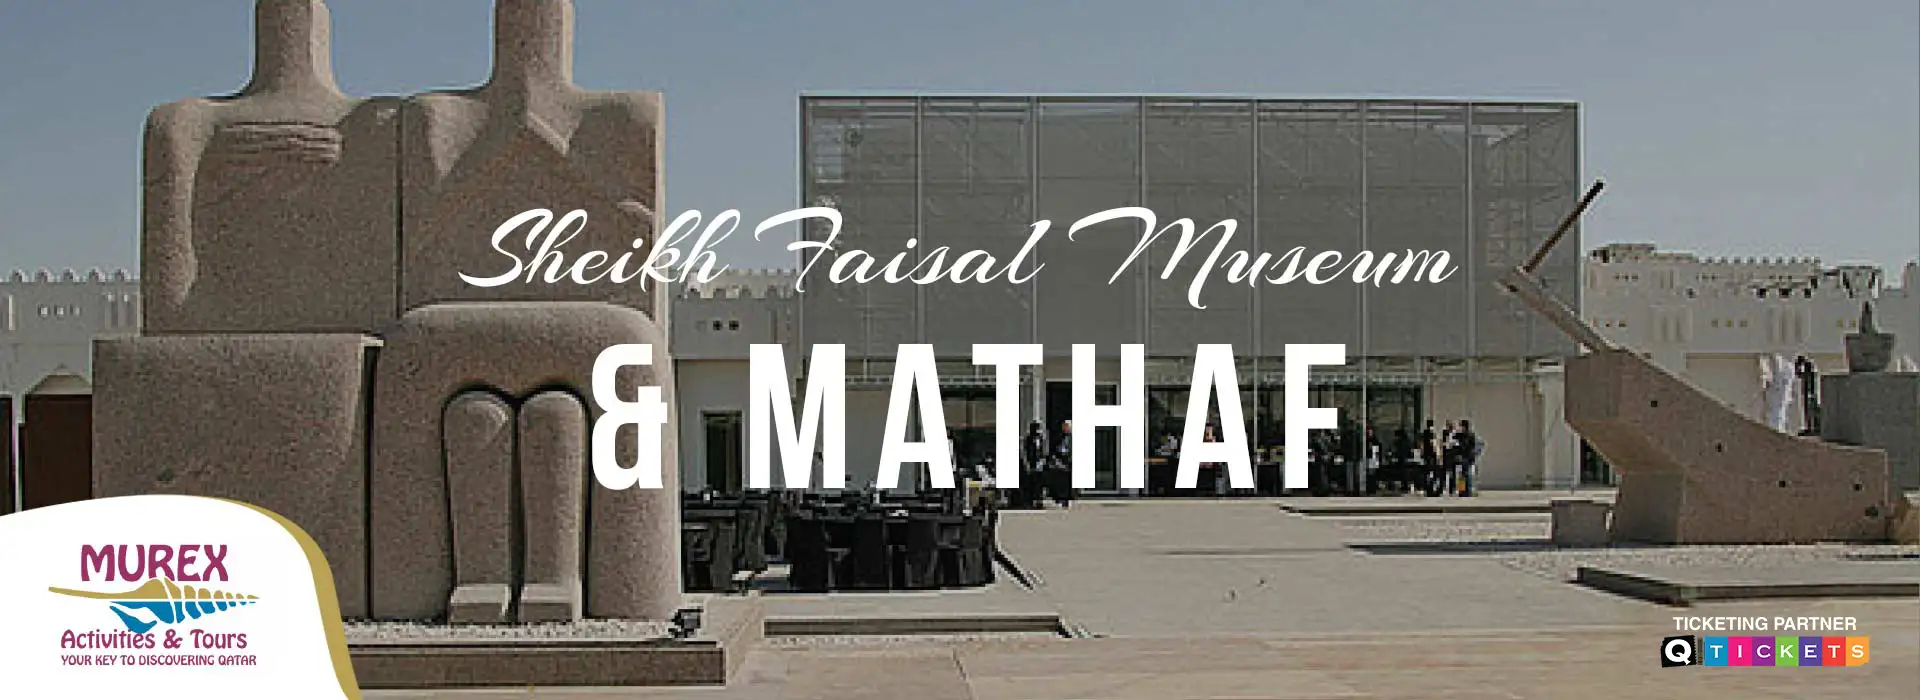 Sheikh Faisal Museum & Mathaf (4 Hrs)